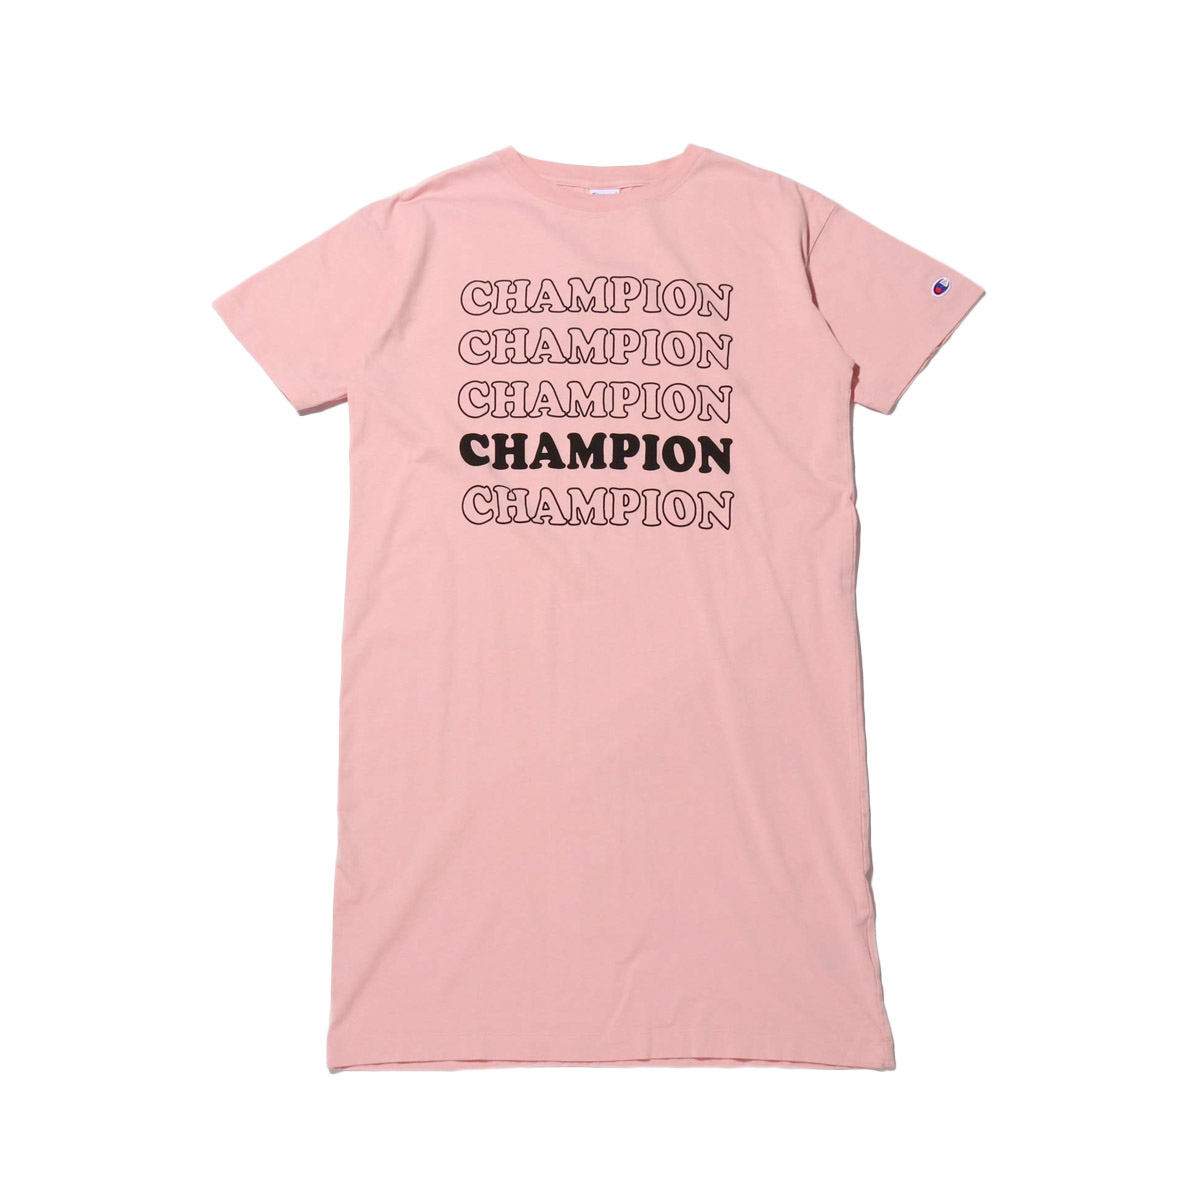 楽天市場 Champion S S Onepiece Light Pink チャンピオン ショートスリーブワンピース レディース ワンピース ss I Kinetics